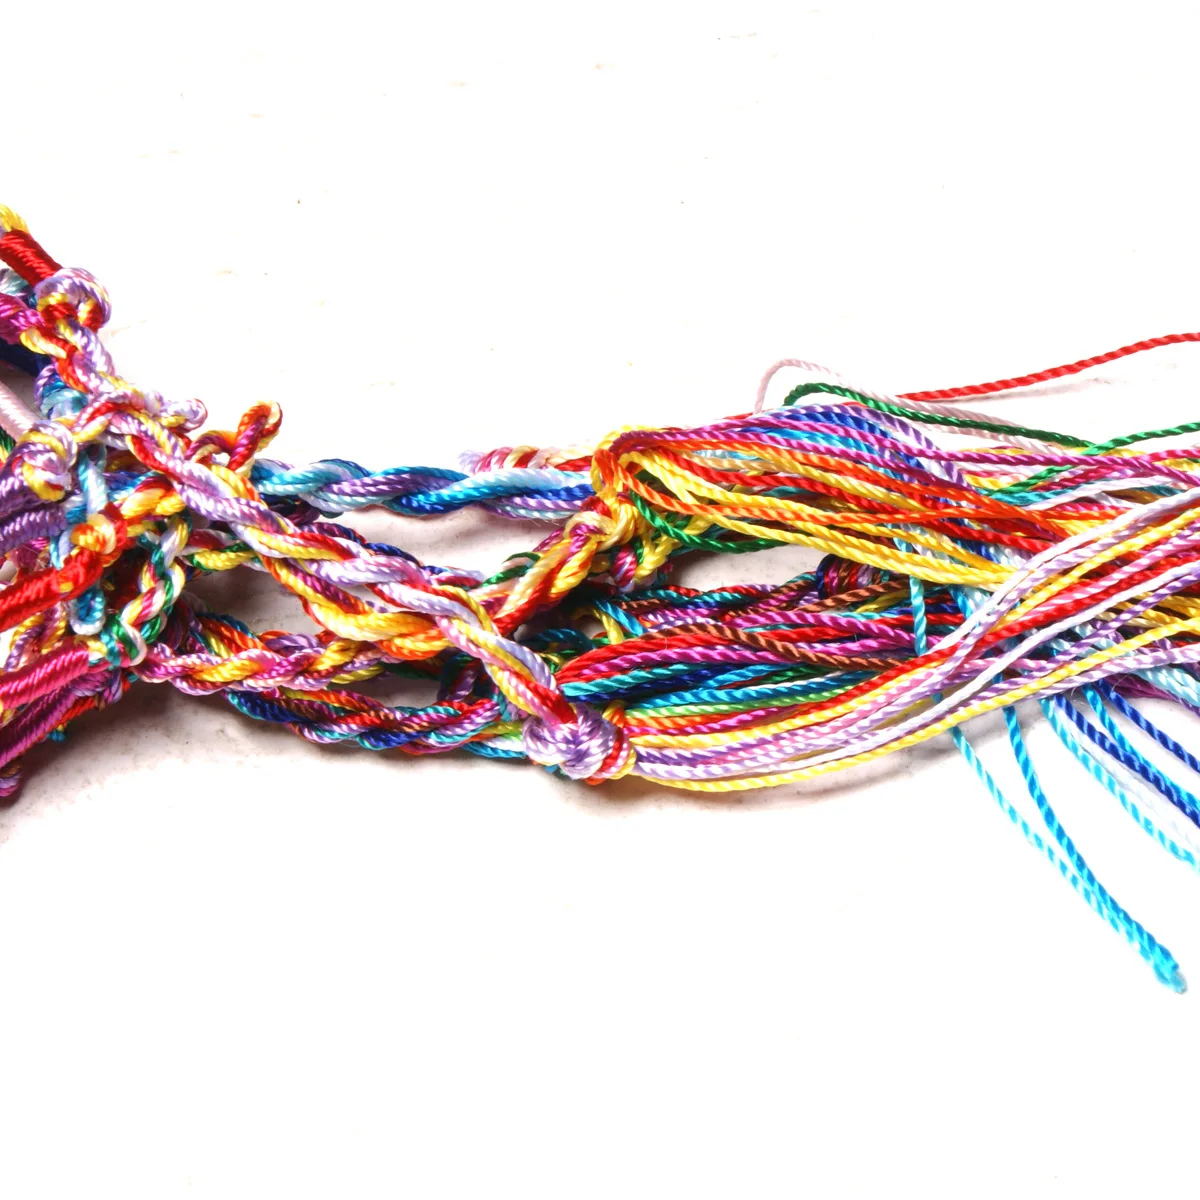 10 шт. цветной Тканый Плетеный браслет дружбы ручная работа бразильская струна хлопок шнур хиппи серфинга для мужчин и женщин ювелирные изделия подарок